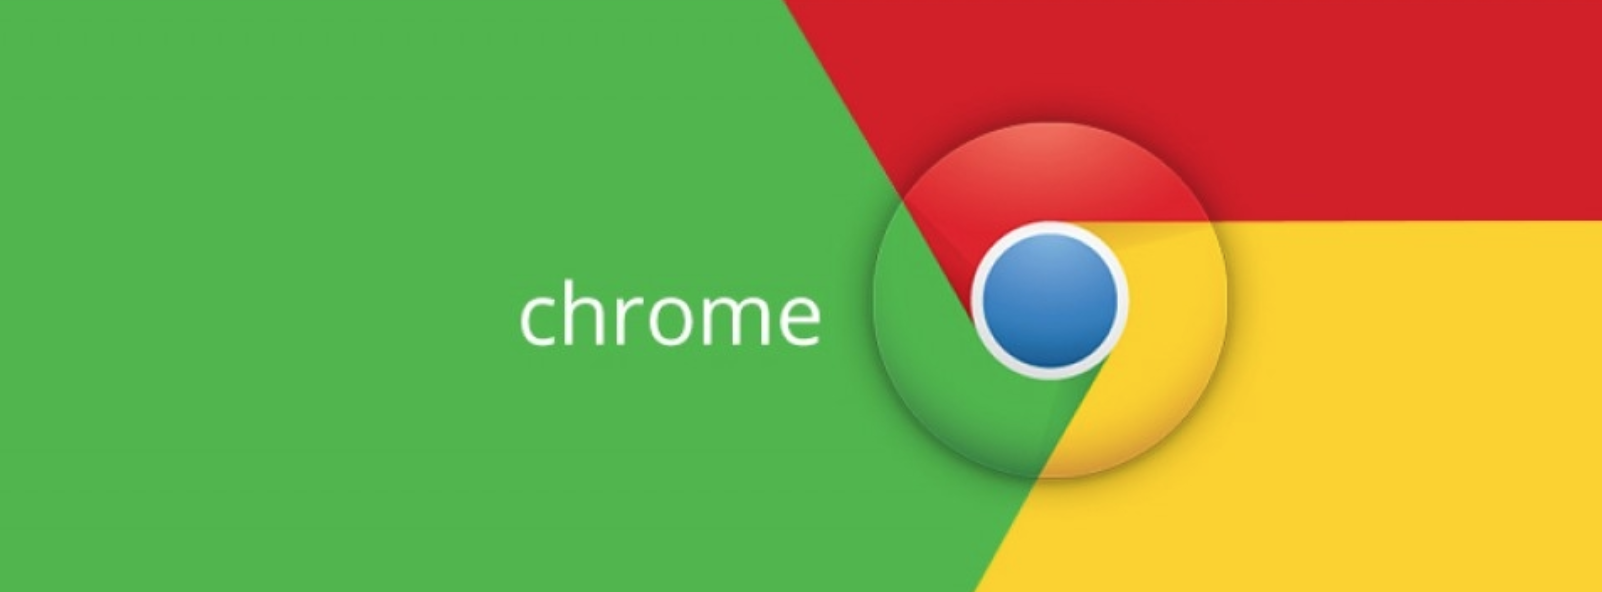 ТОП рейтинг безопасных браузеров - Google Chrome